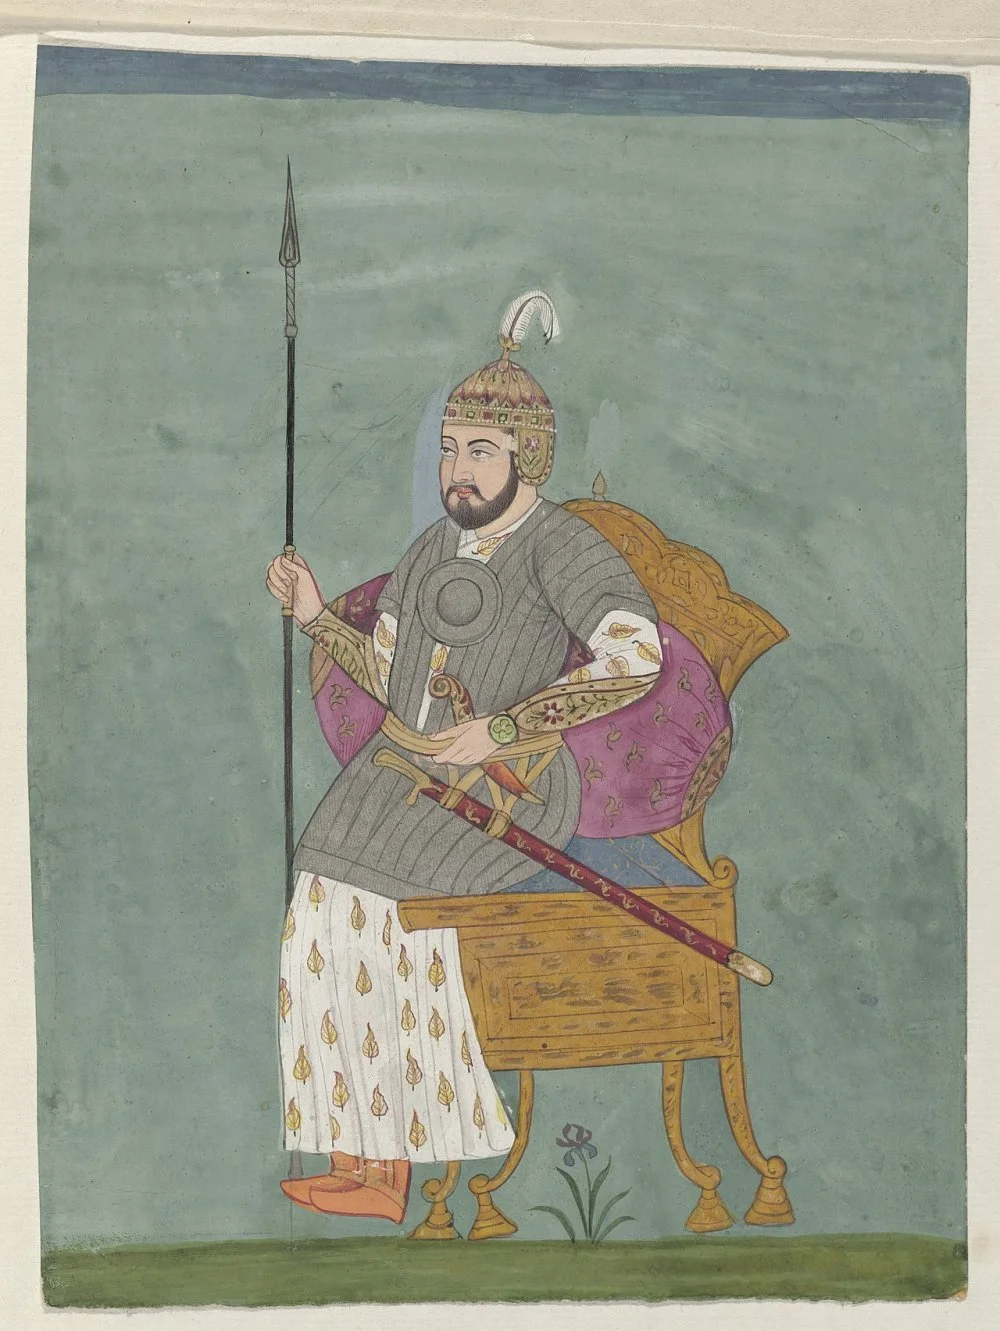 Тимур. Великий эмир (1370-1405) Империи Тимуридов/Wikimedia Commons